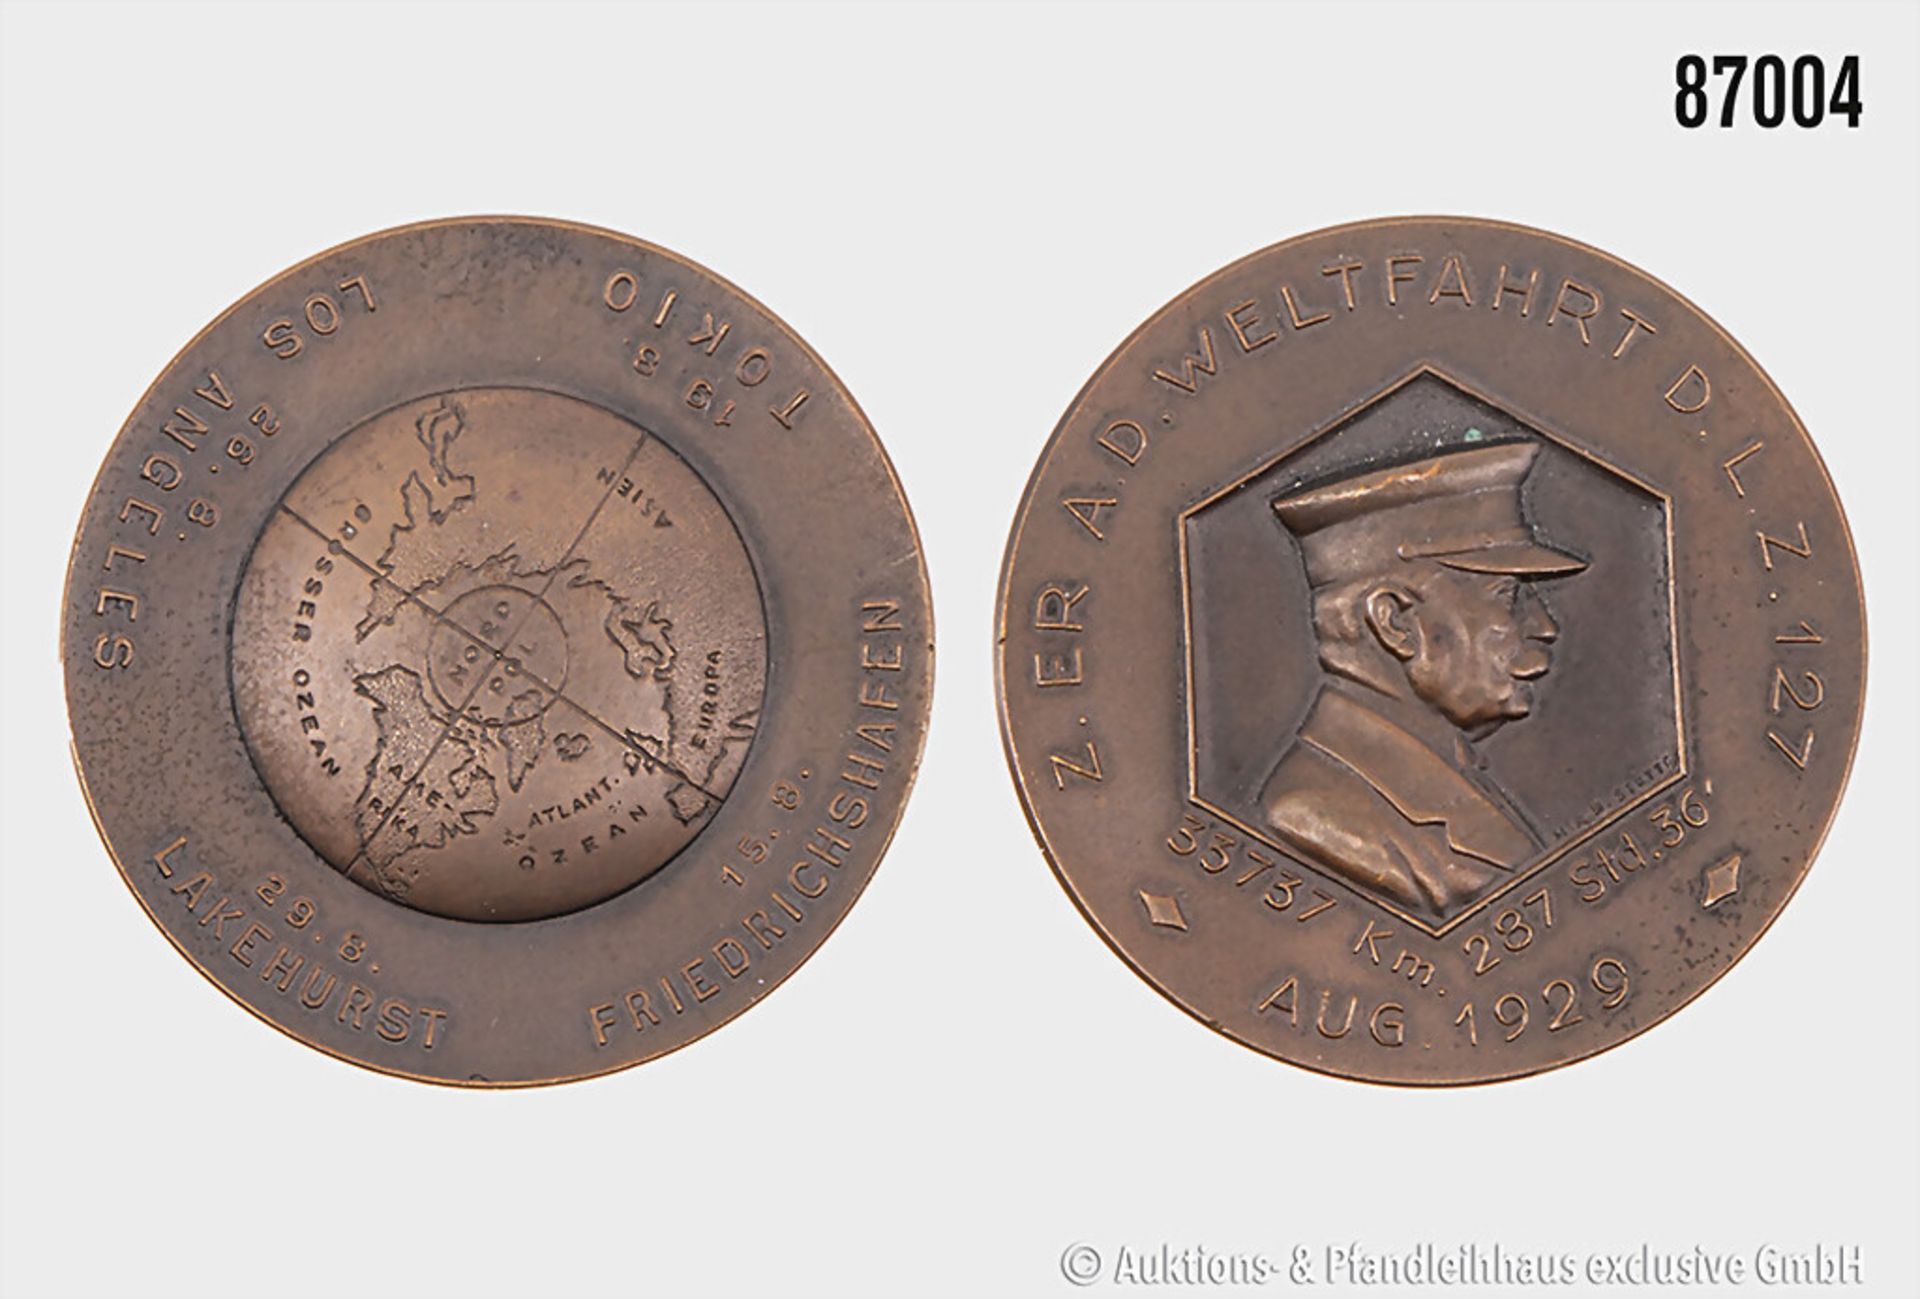 bronzene Medaille "Z. ER AD. WELTFAHRT D. L. Z. 127 Aug 1929 - 33737 km 287 Std. 36", ...